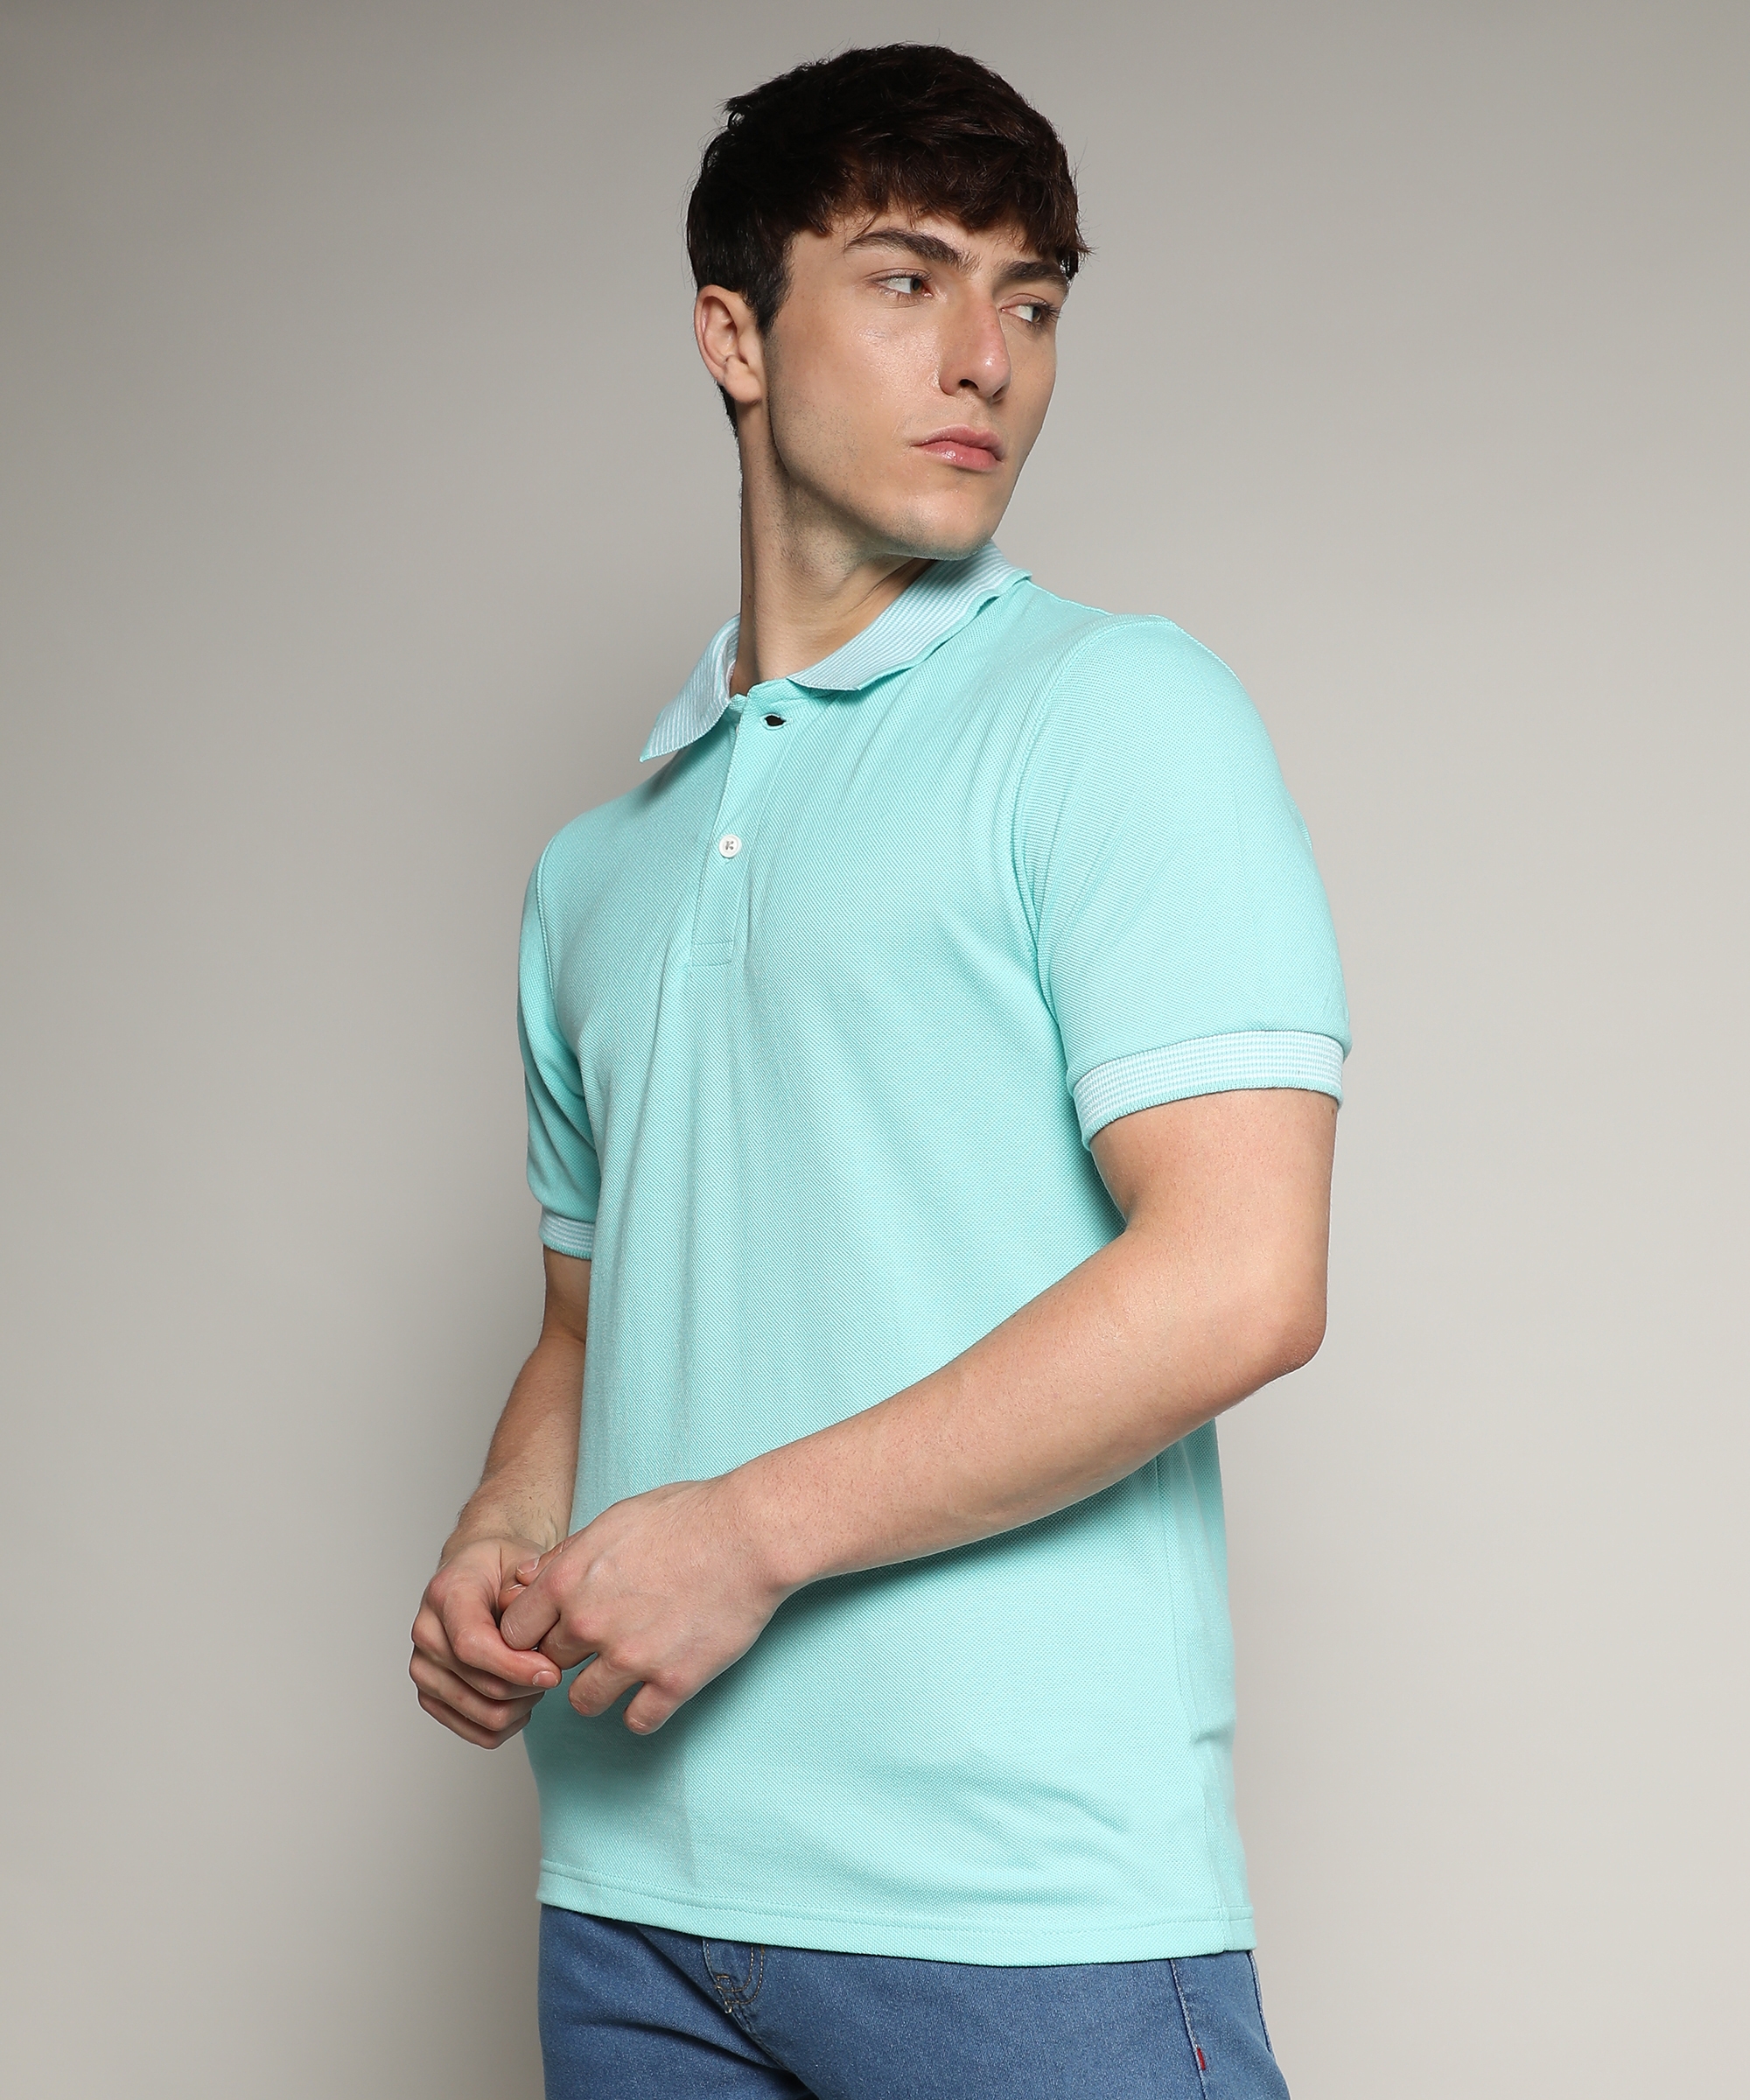 CAMPUS SUTRA | Men's Aqua Blue Solid Polo T-Shirt